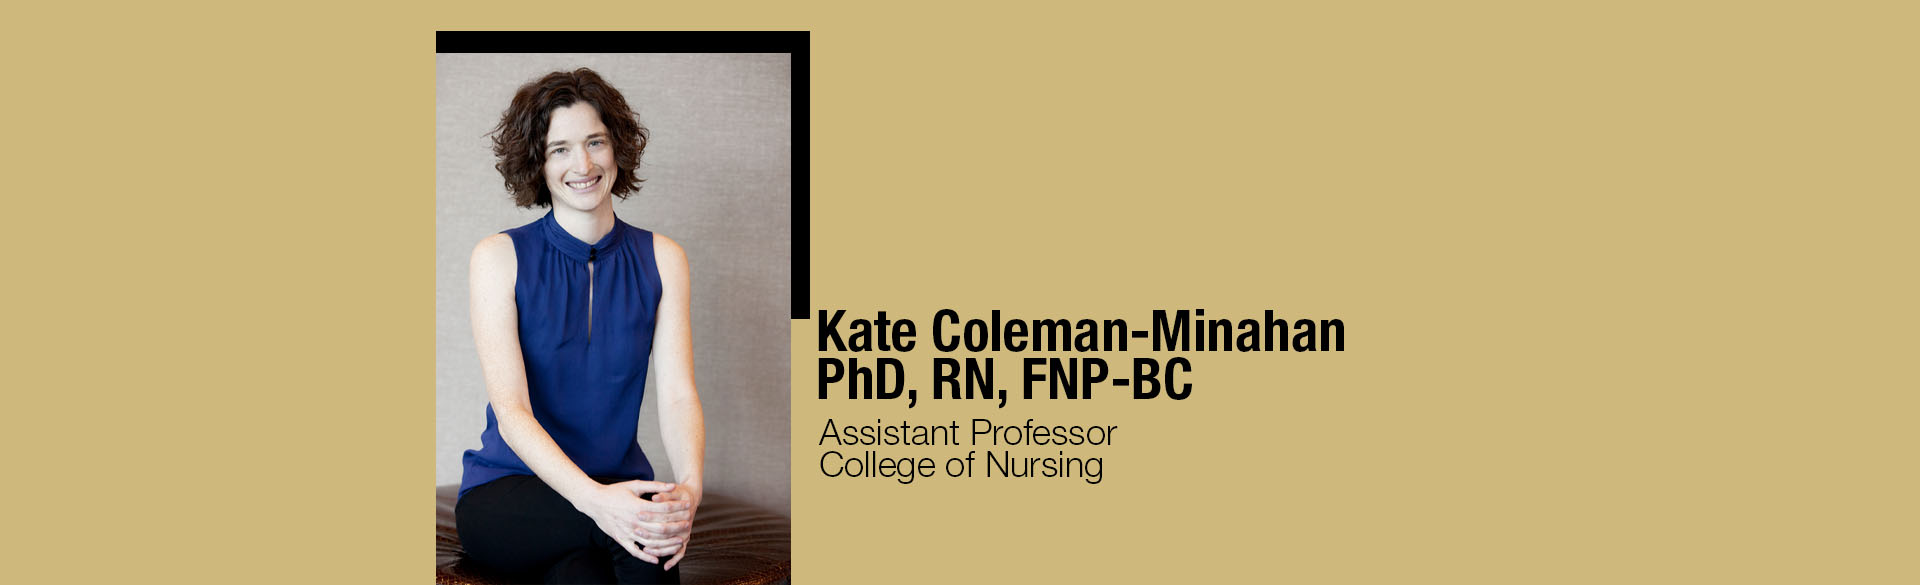 Kate Coleman-Minahan, PhD, RN, FNP-BC